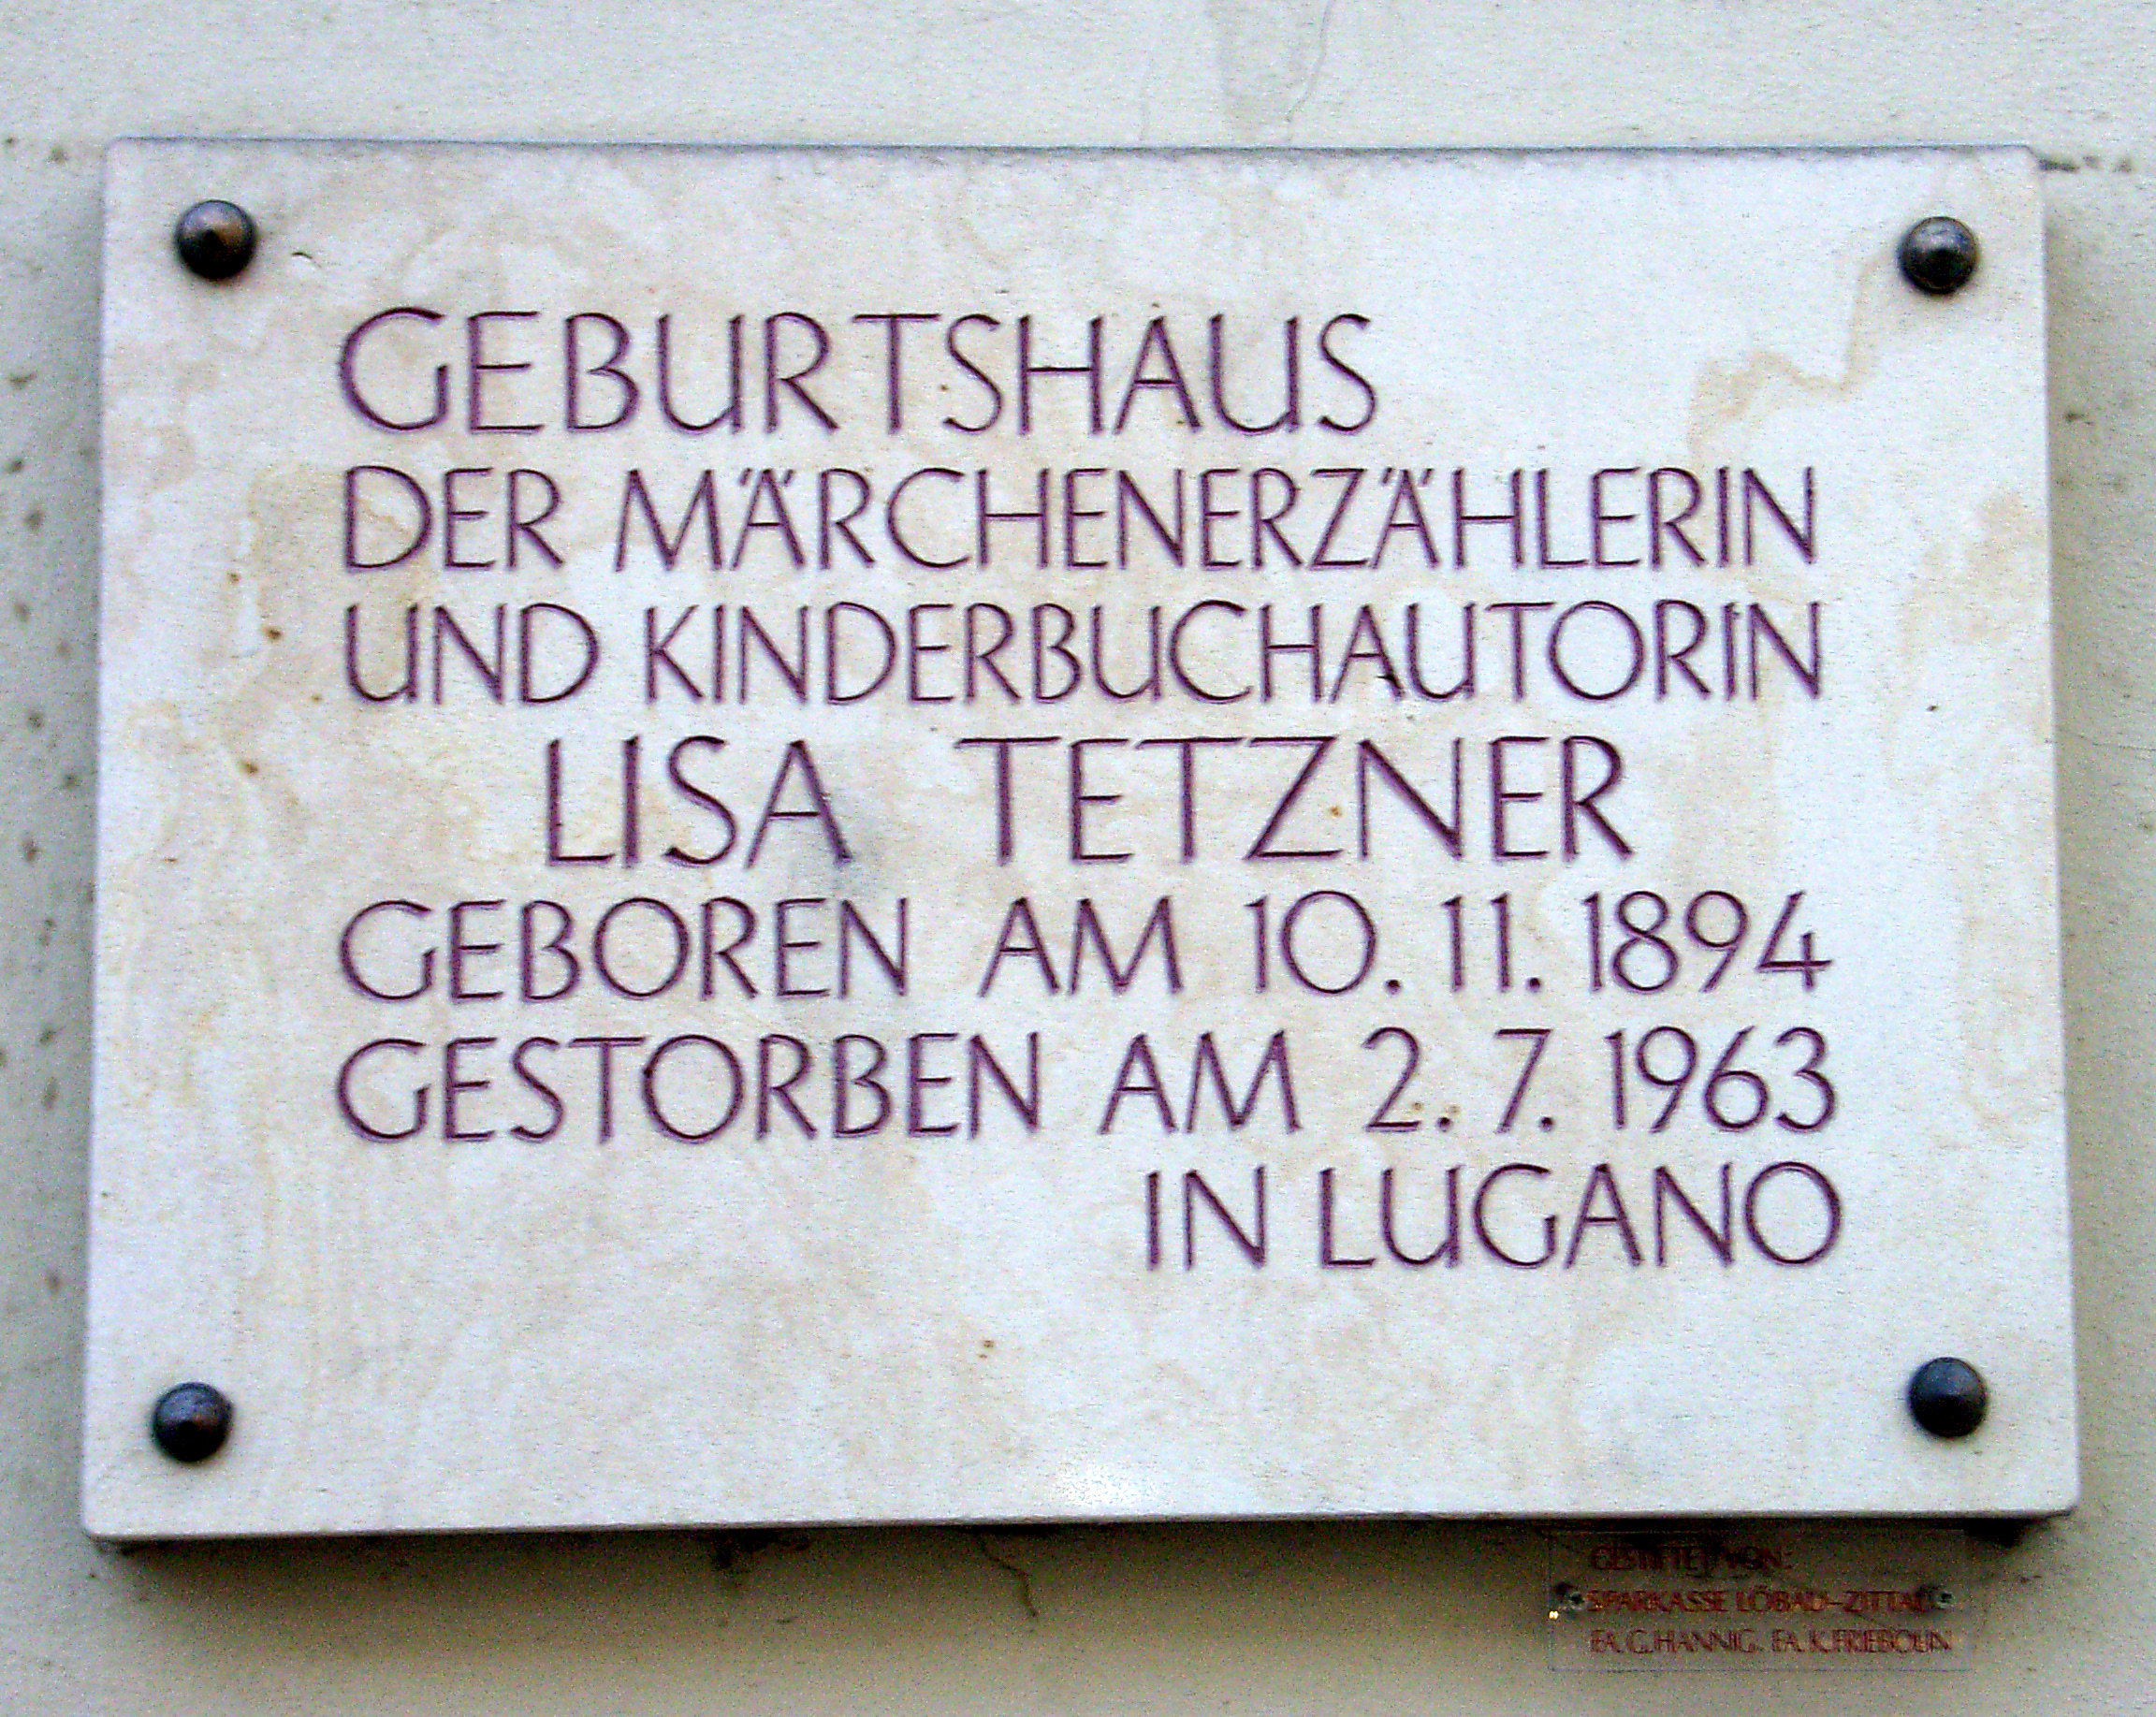 A plaque in [[Zittau